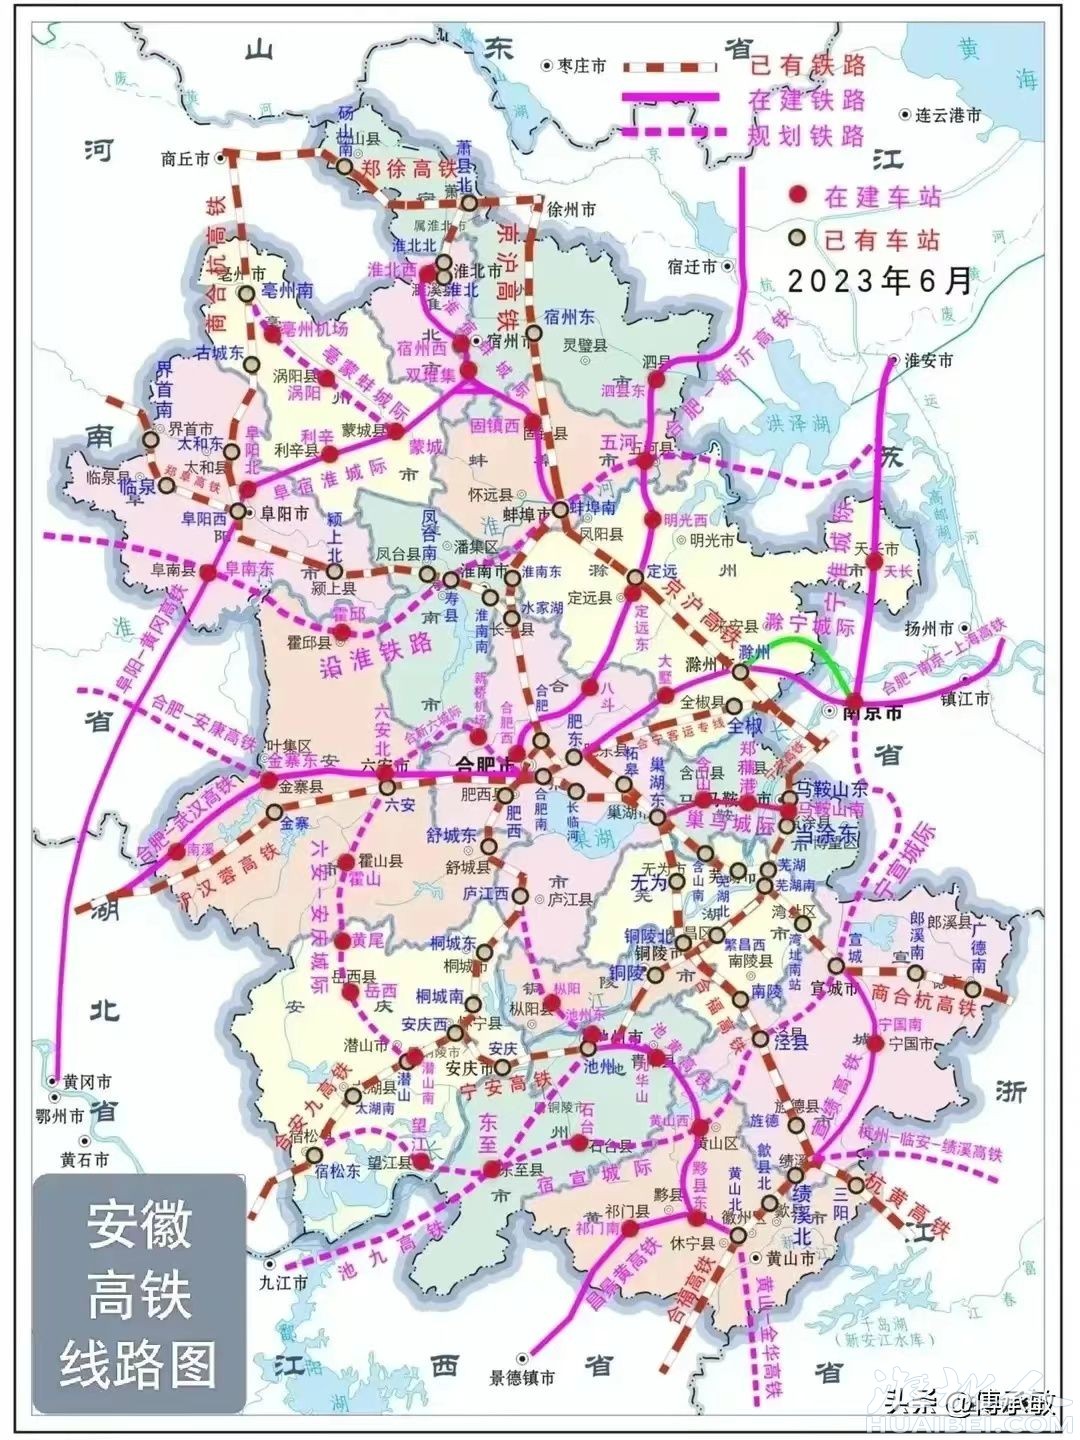 安徽2023年6月高速铁路线路及车站示意图2.jpg